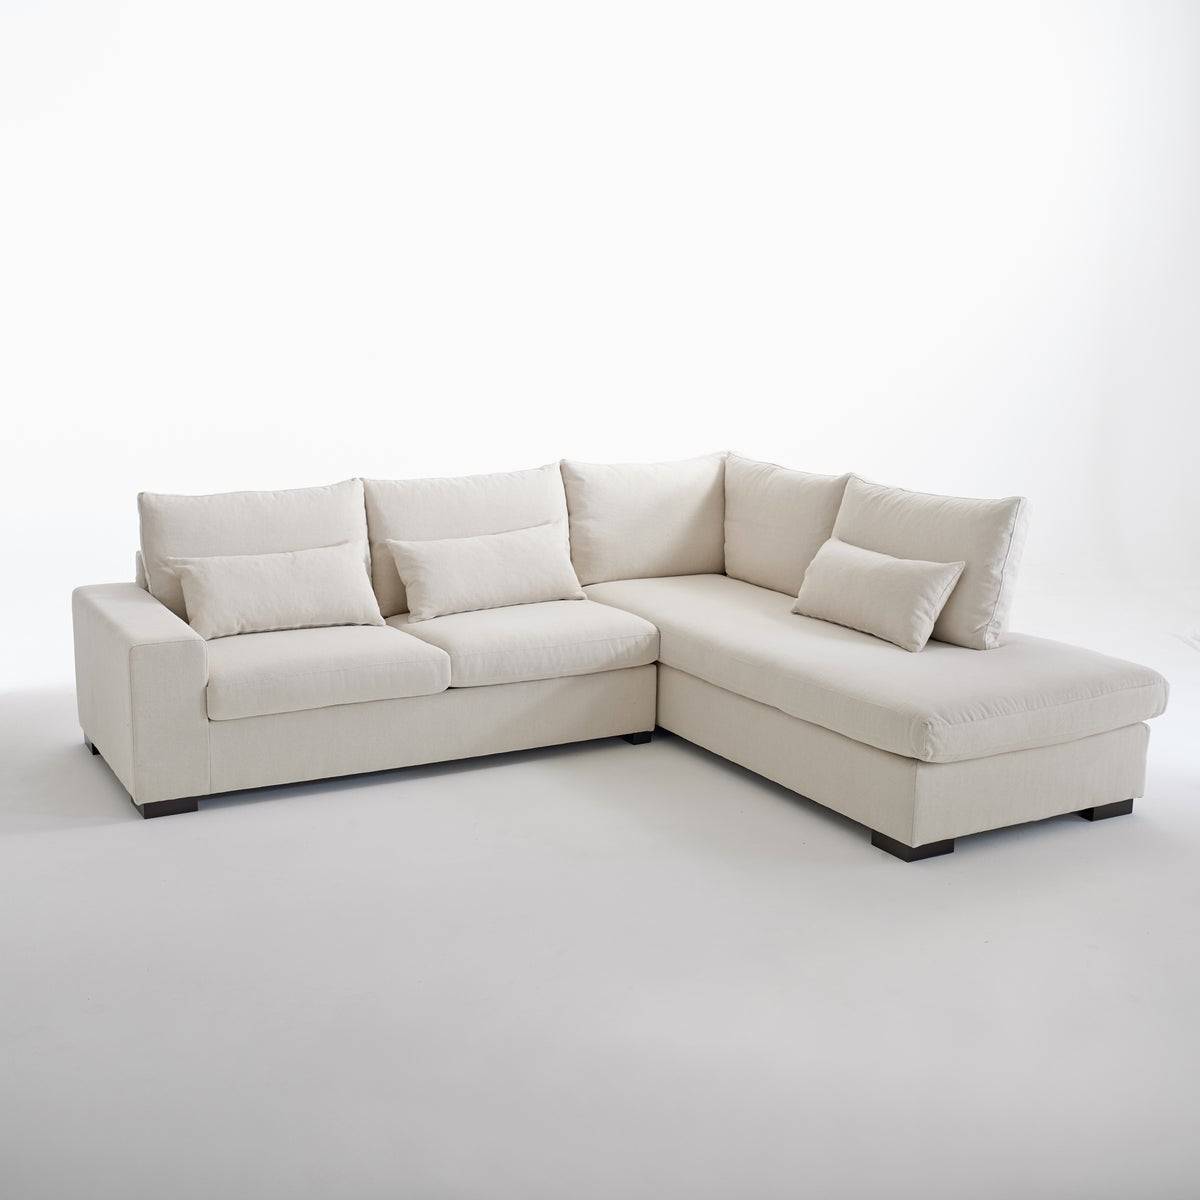 Sofá cama con chaise longue de algodón y lino en color beige modelo Odessa de La Redoute